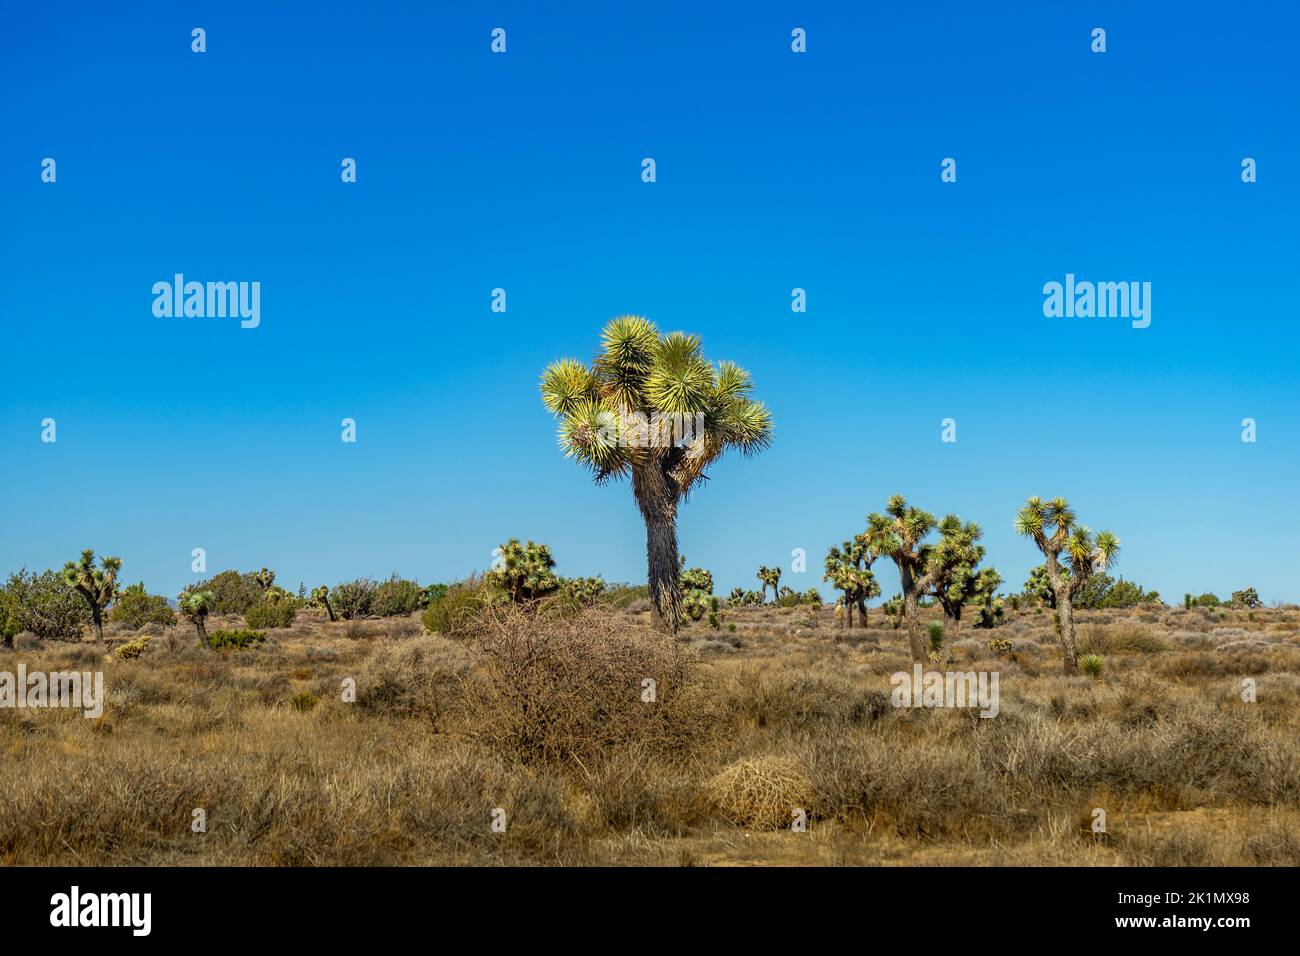 Joshua alberi nel deserto di Mojave in California con cielo blu chiaro Foto Stock